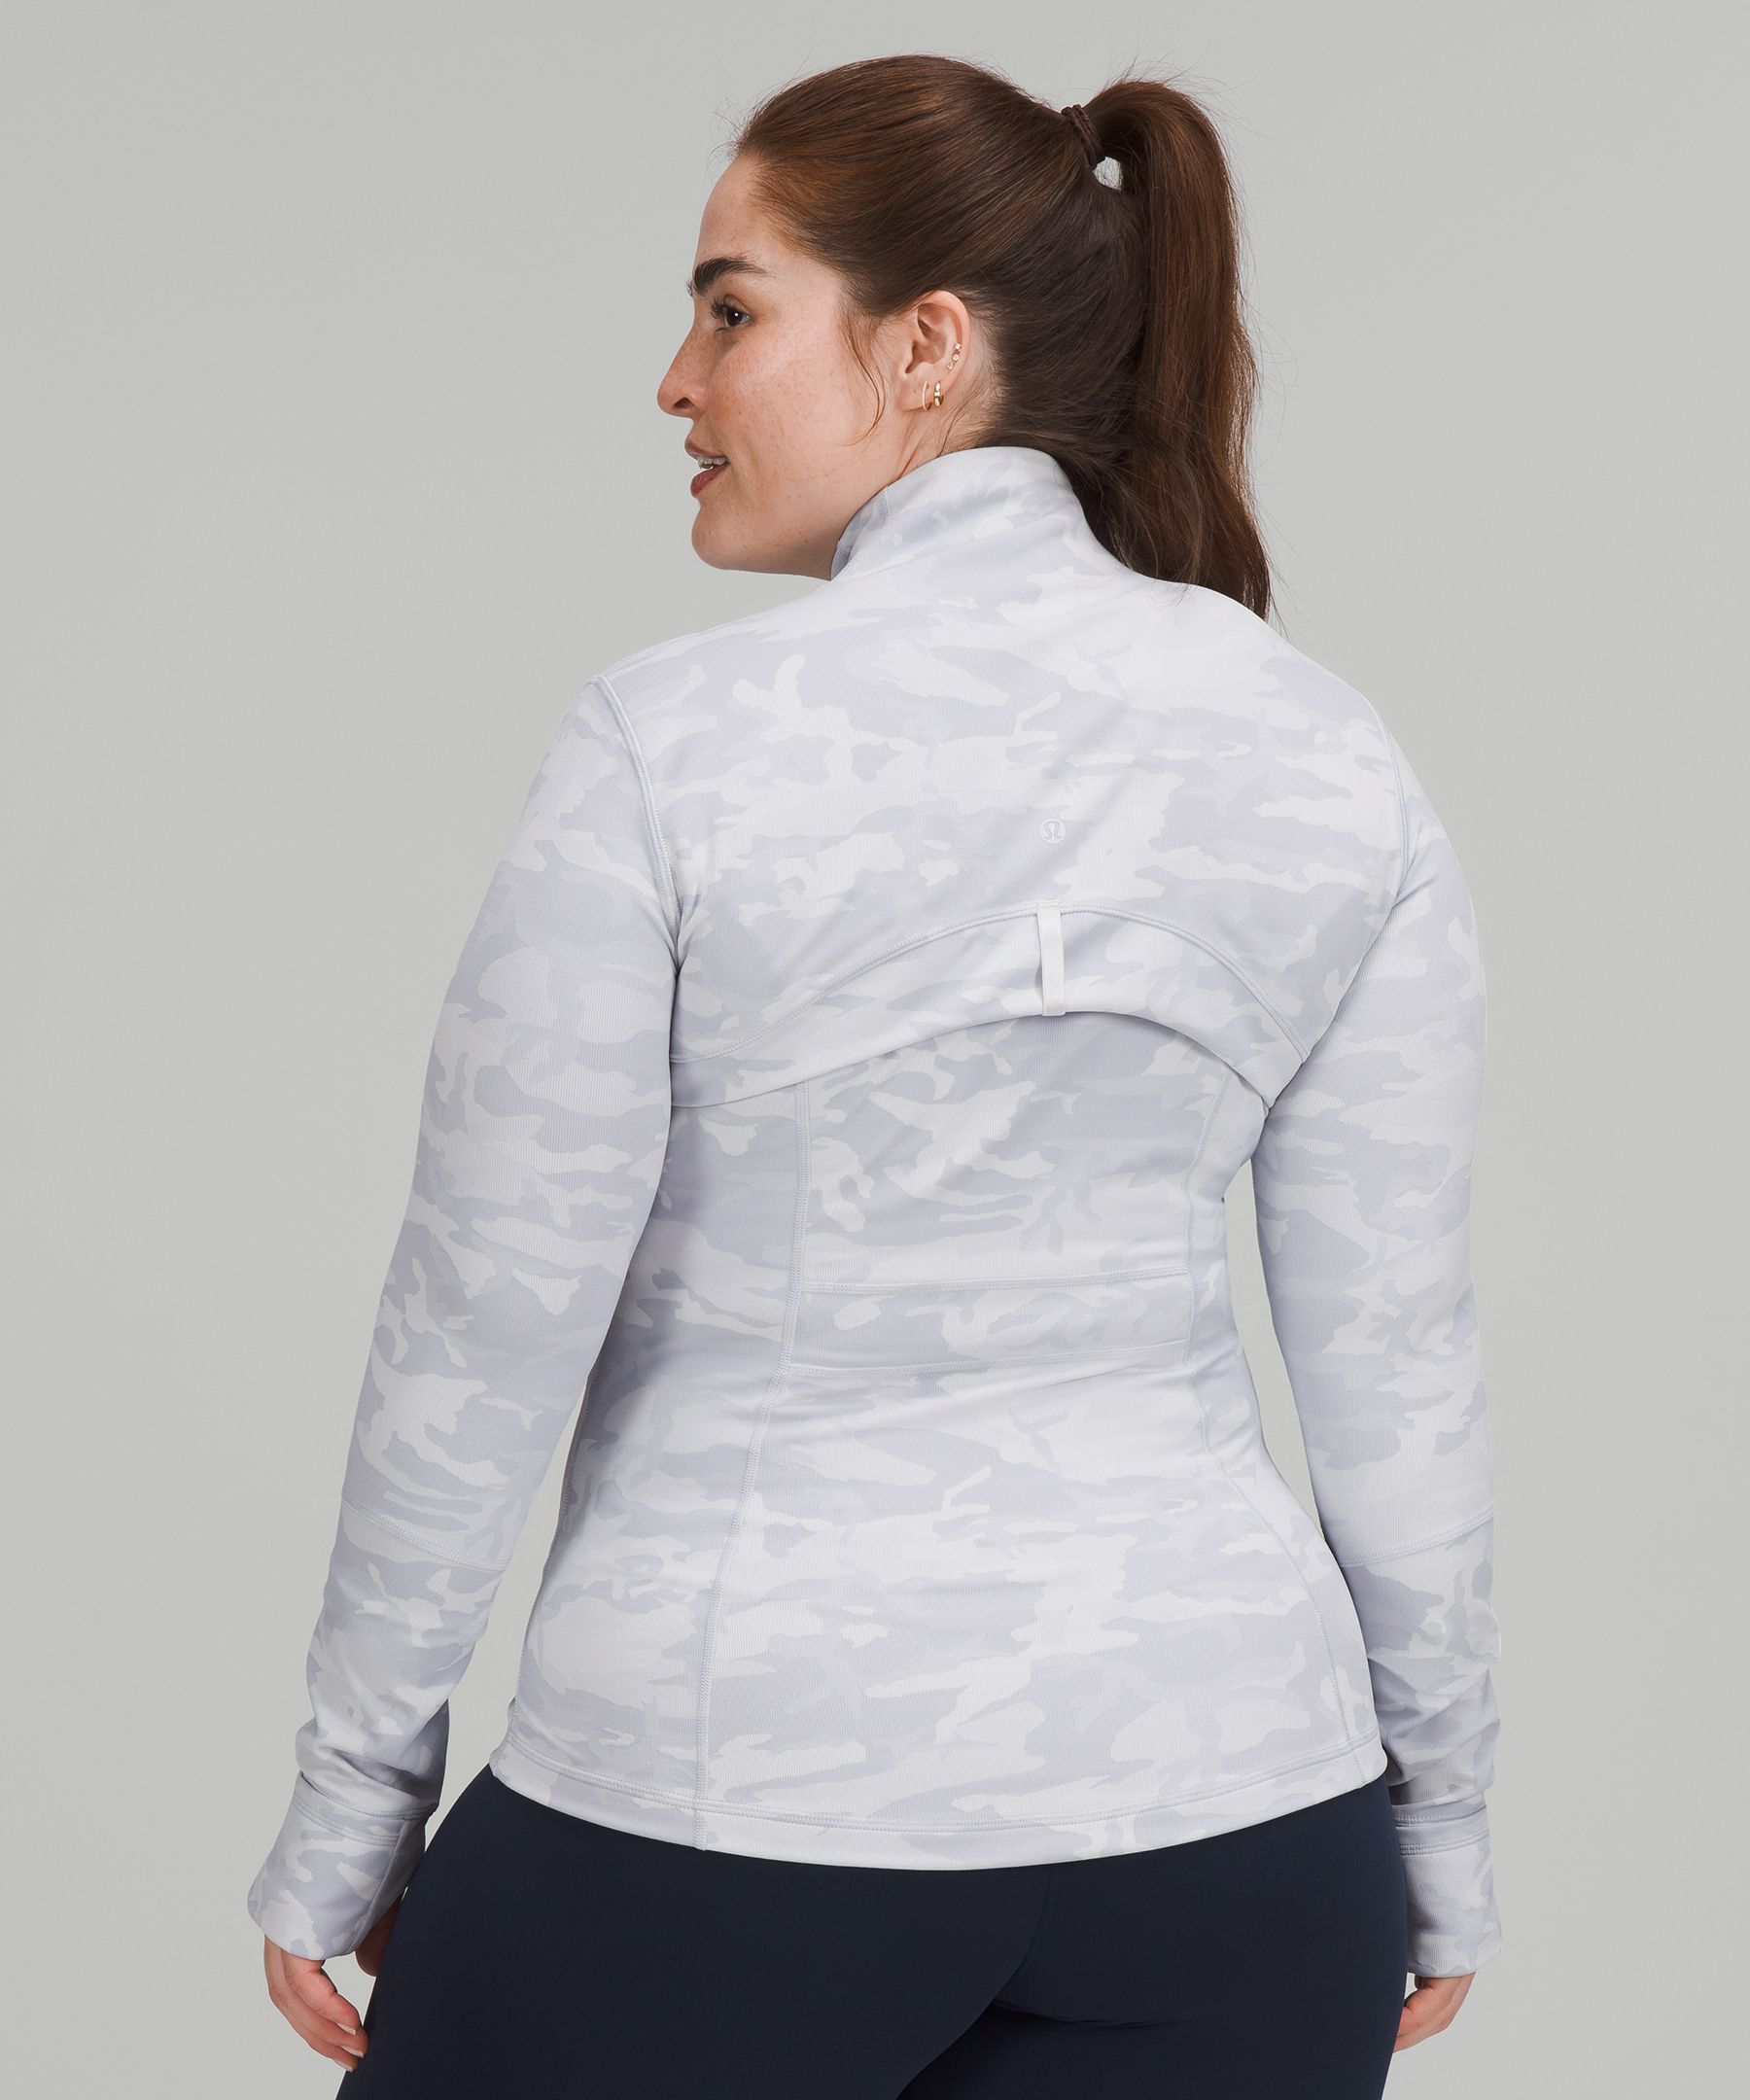 Lululemon Define Jacket *Luxtreme Incognito Camo Jacquard Alpine White  Size: 10